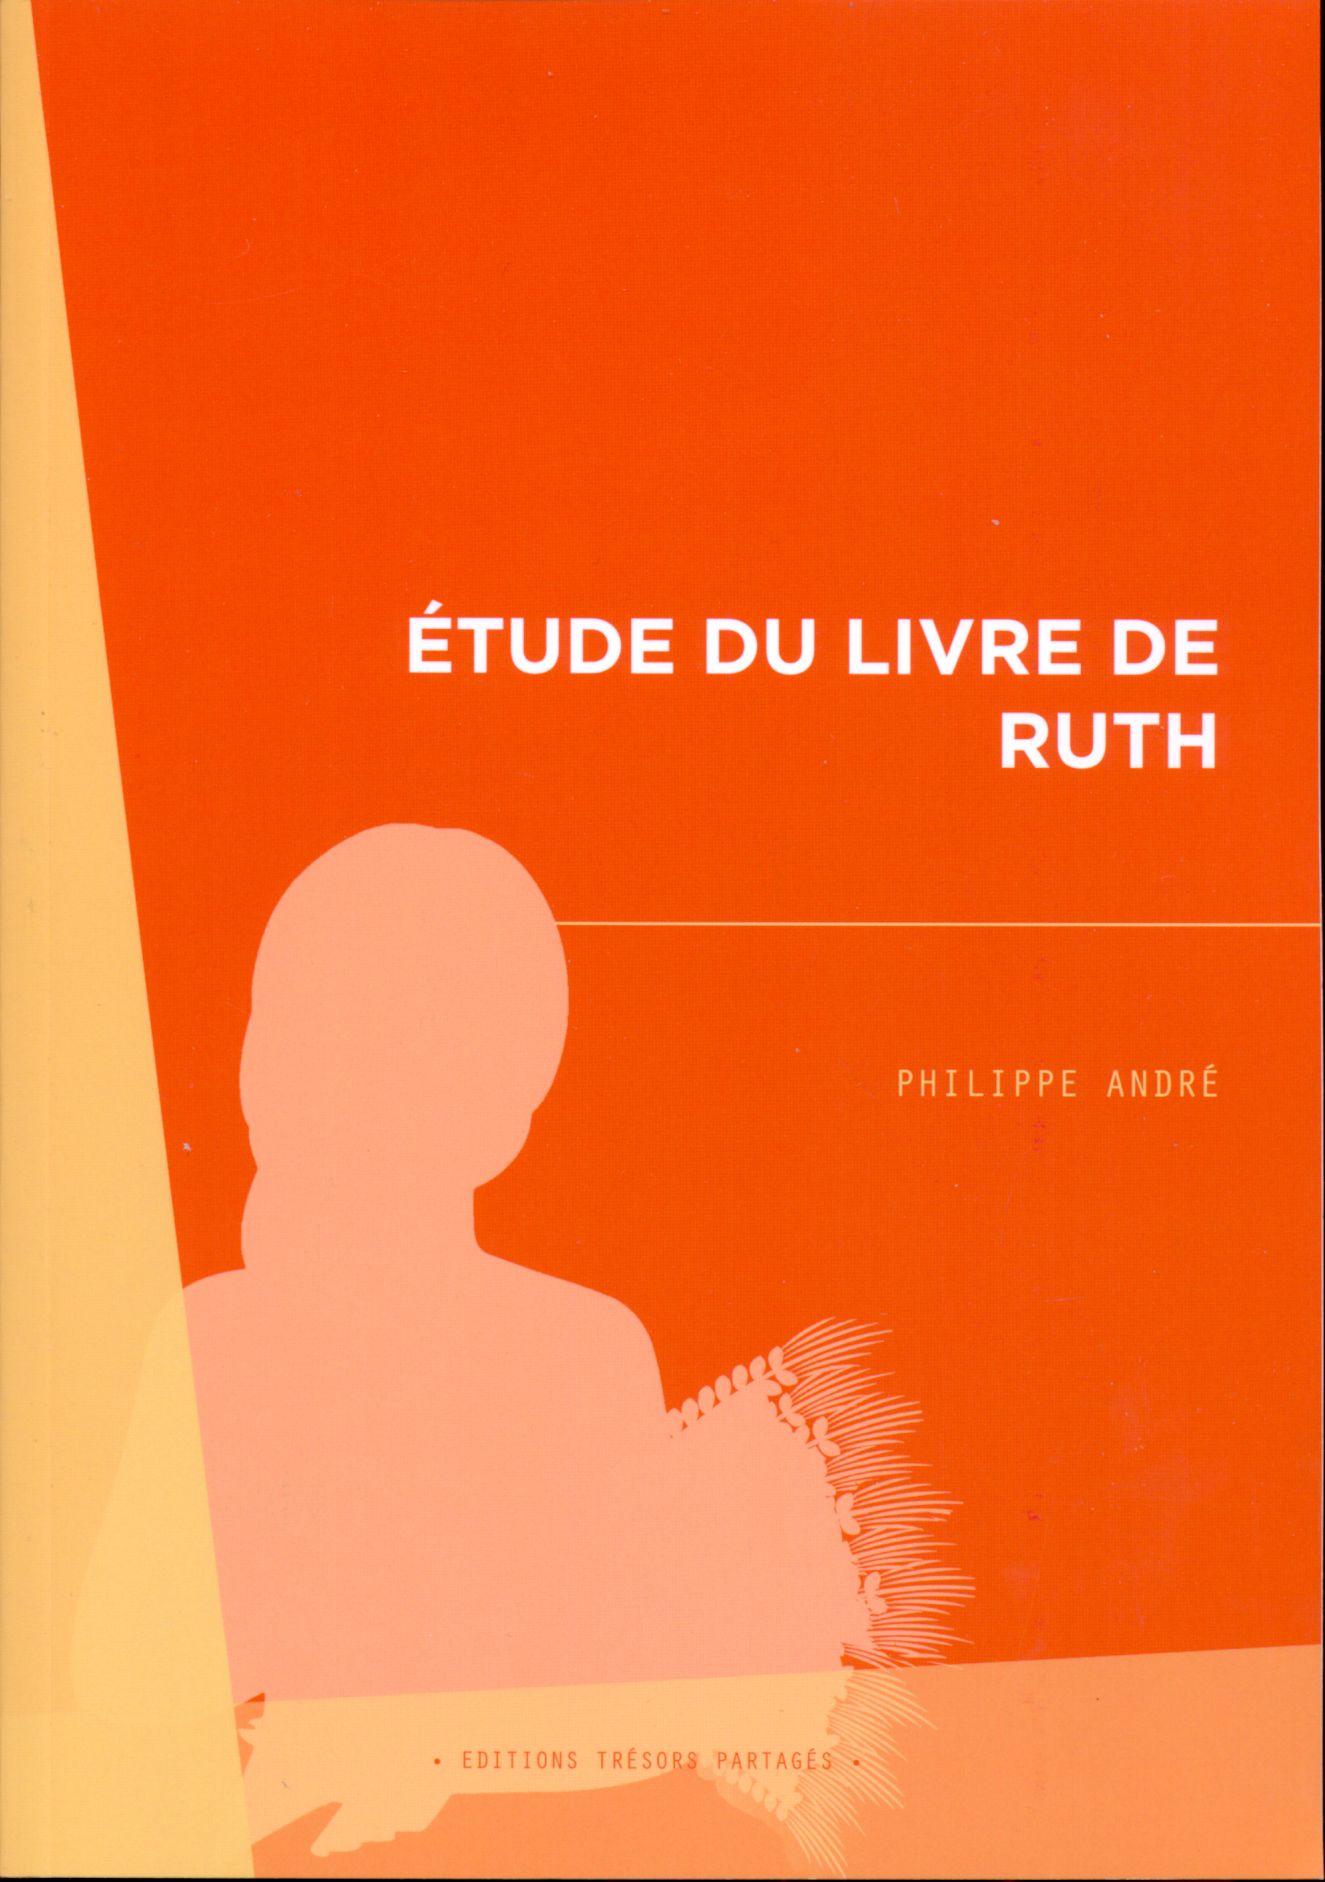 ÉTUDE DU LIVRE DE RUTH